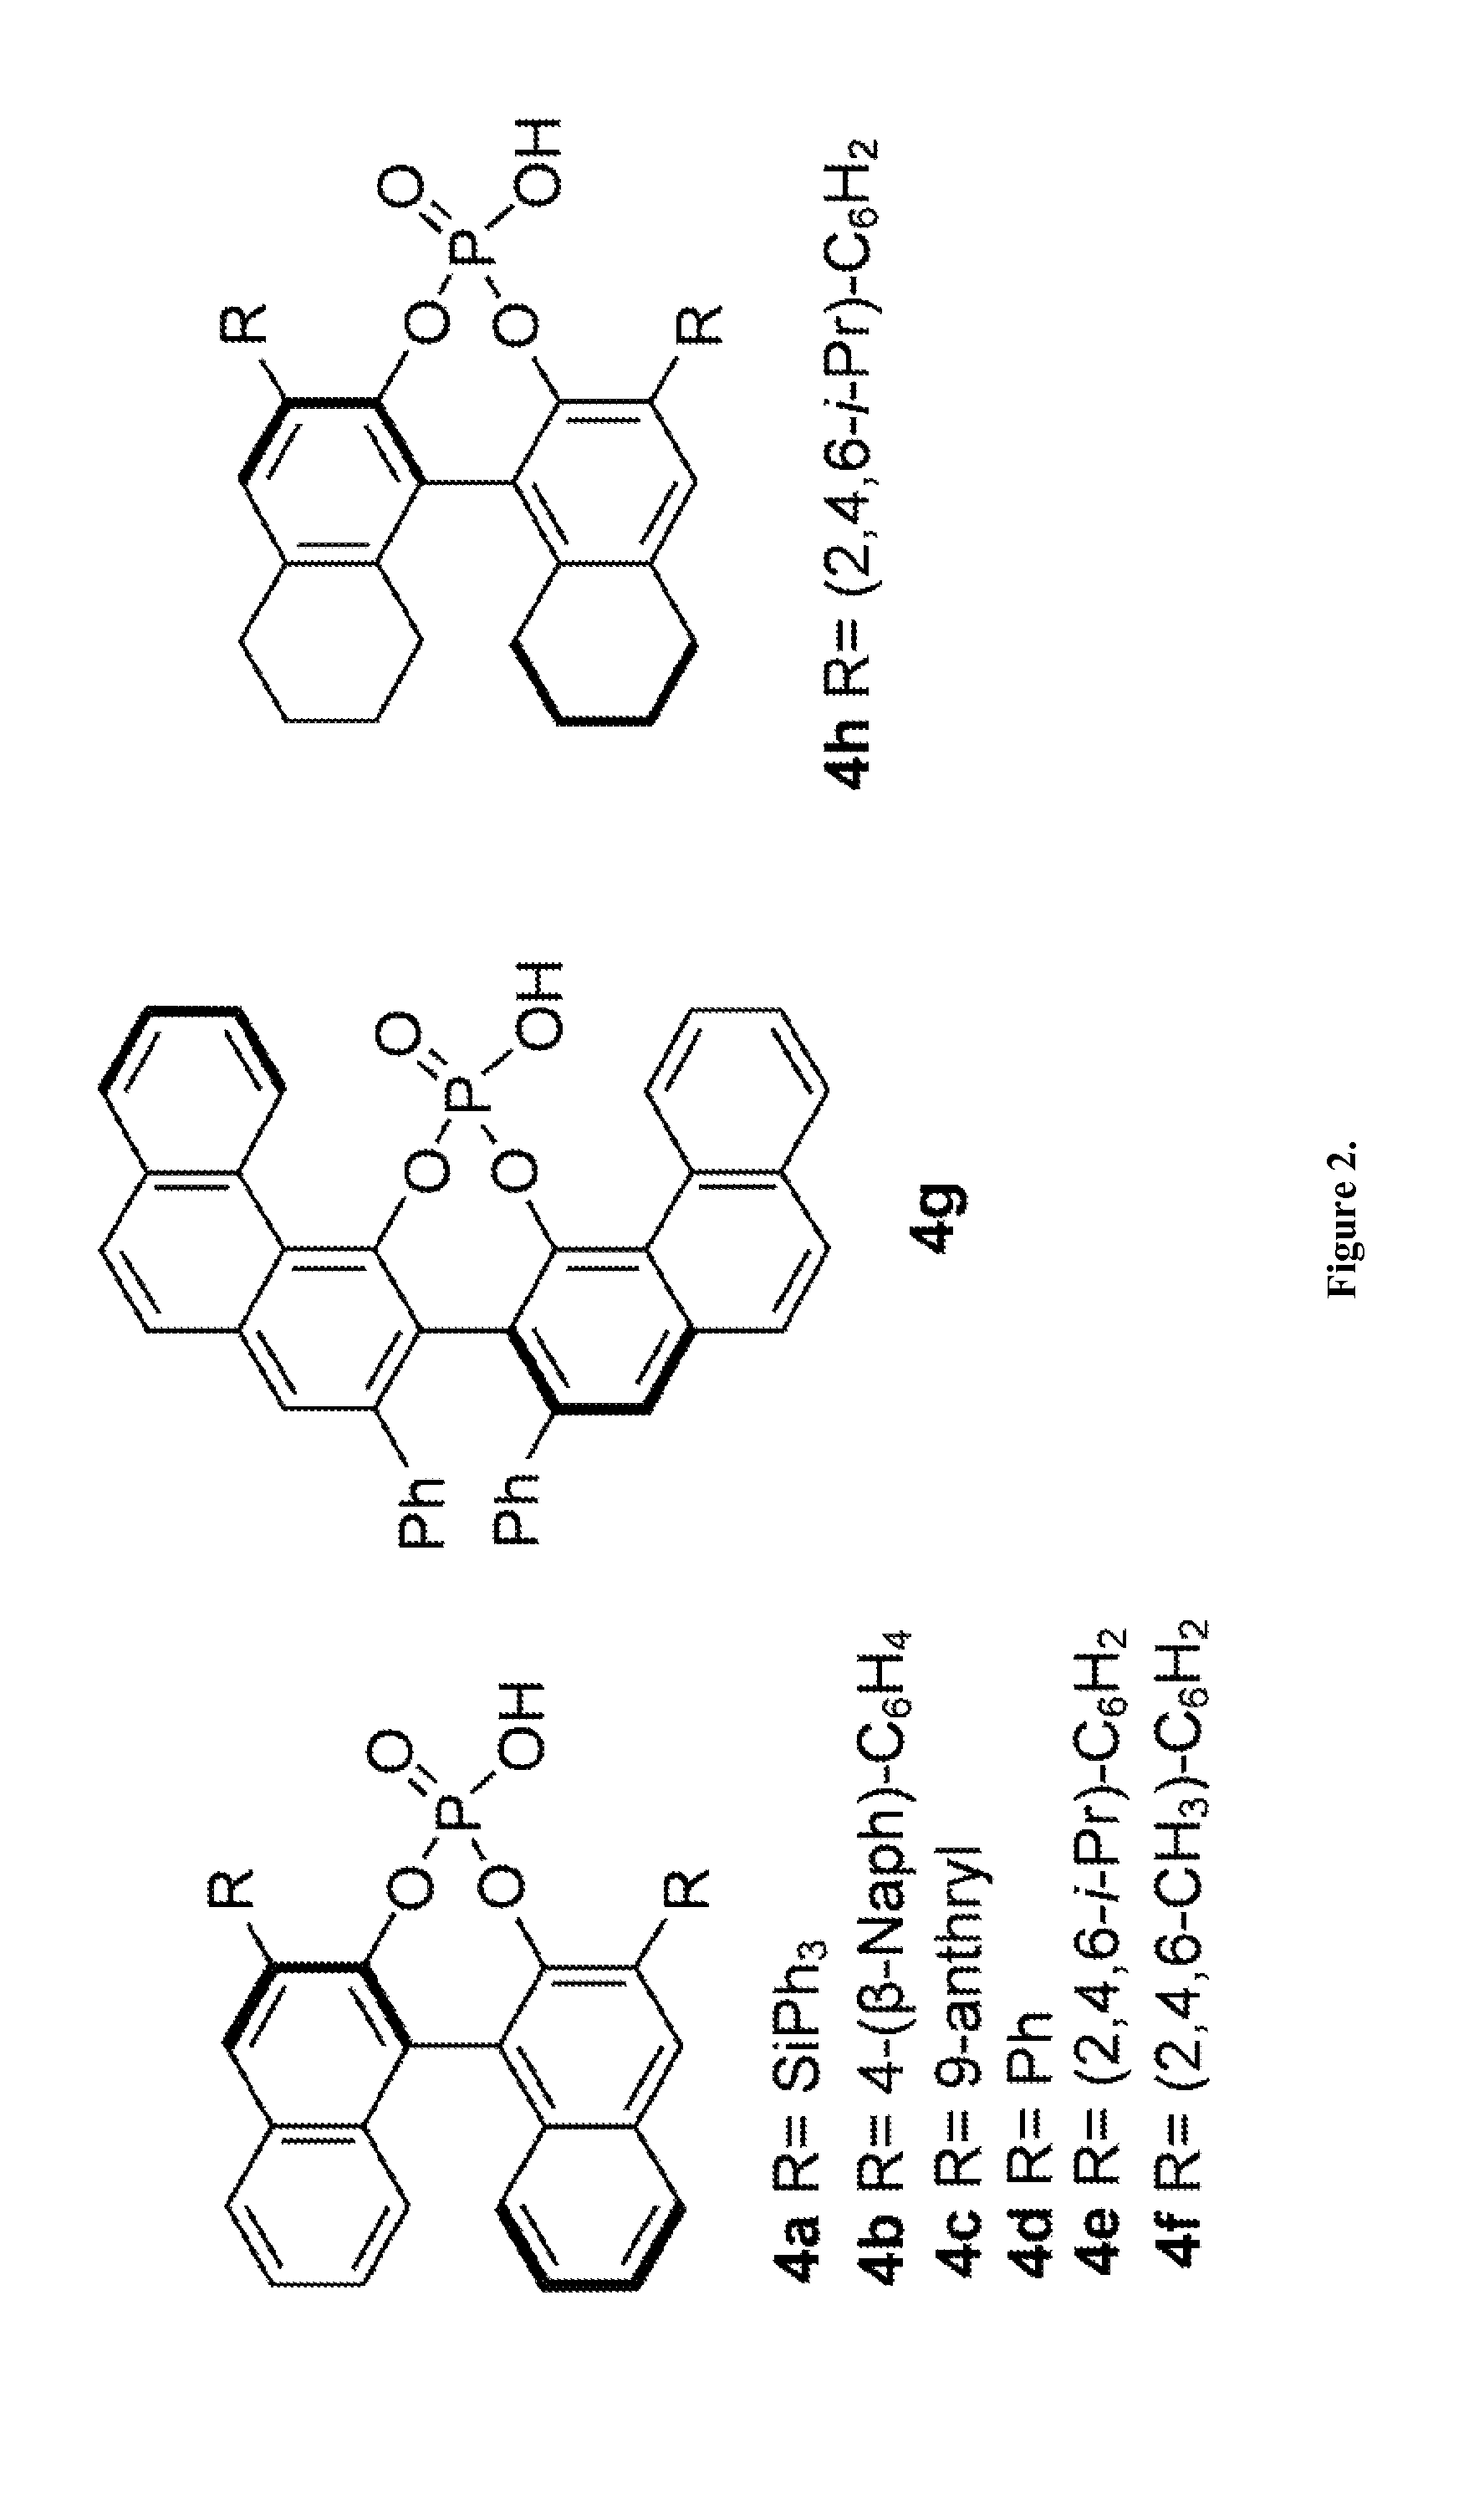 Brønsted acid-catalyzed asymmetric allylation and propargylation of aldehydes